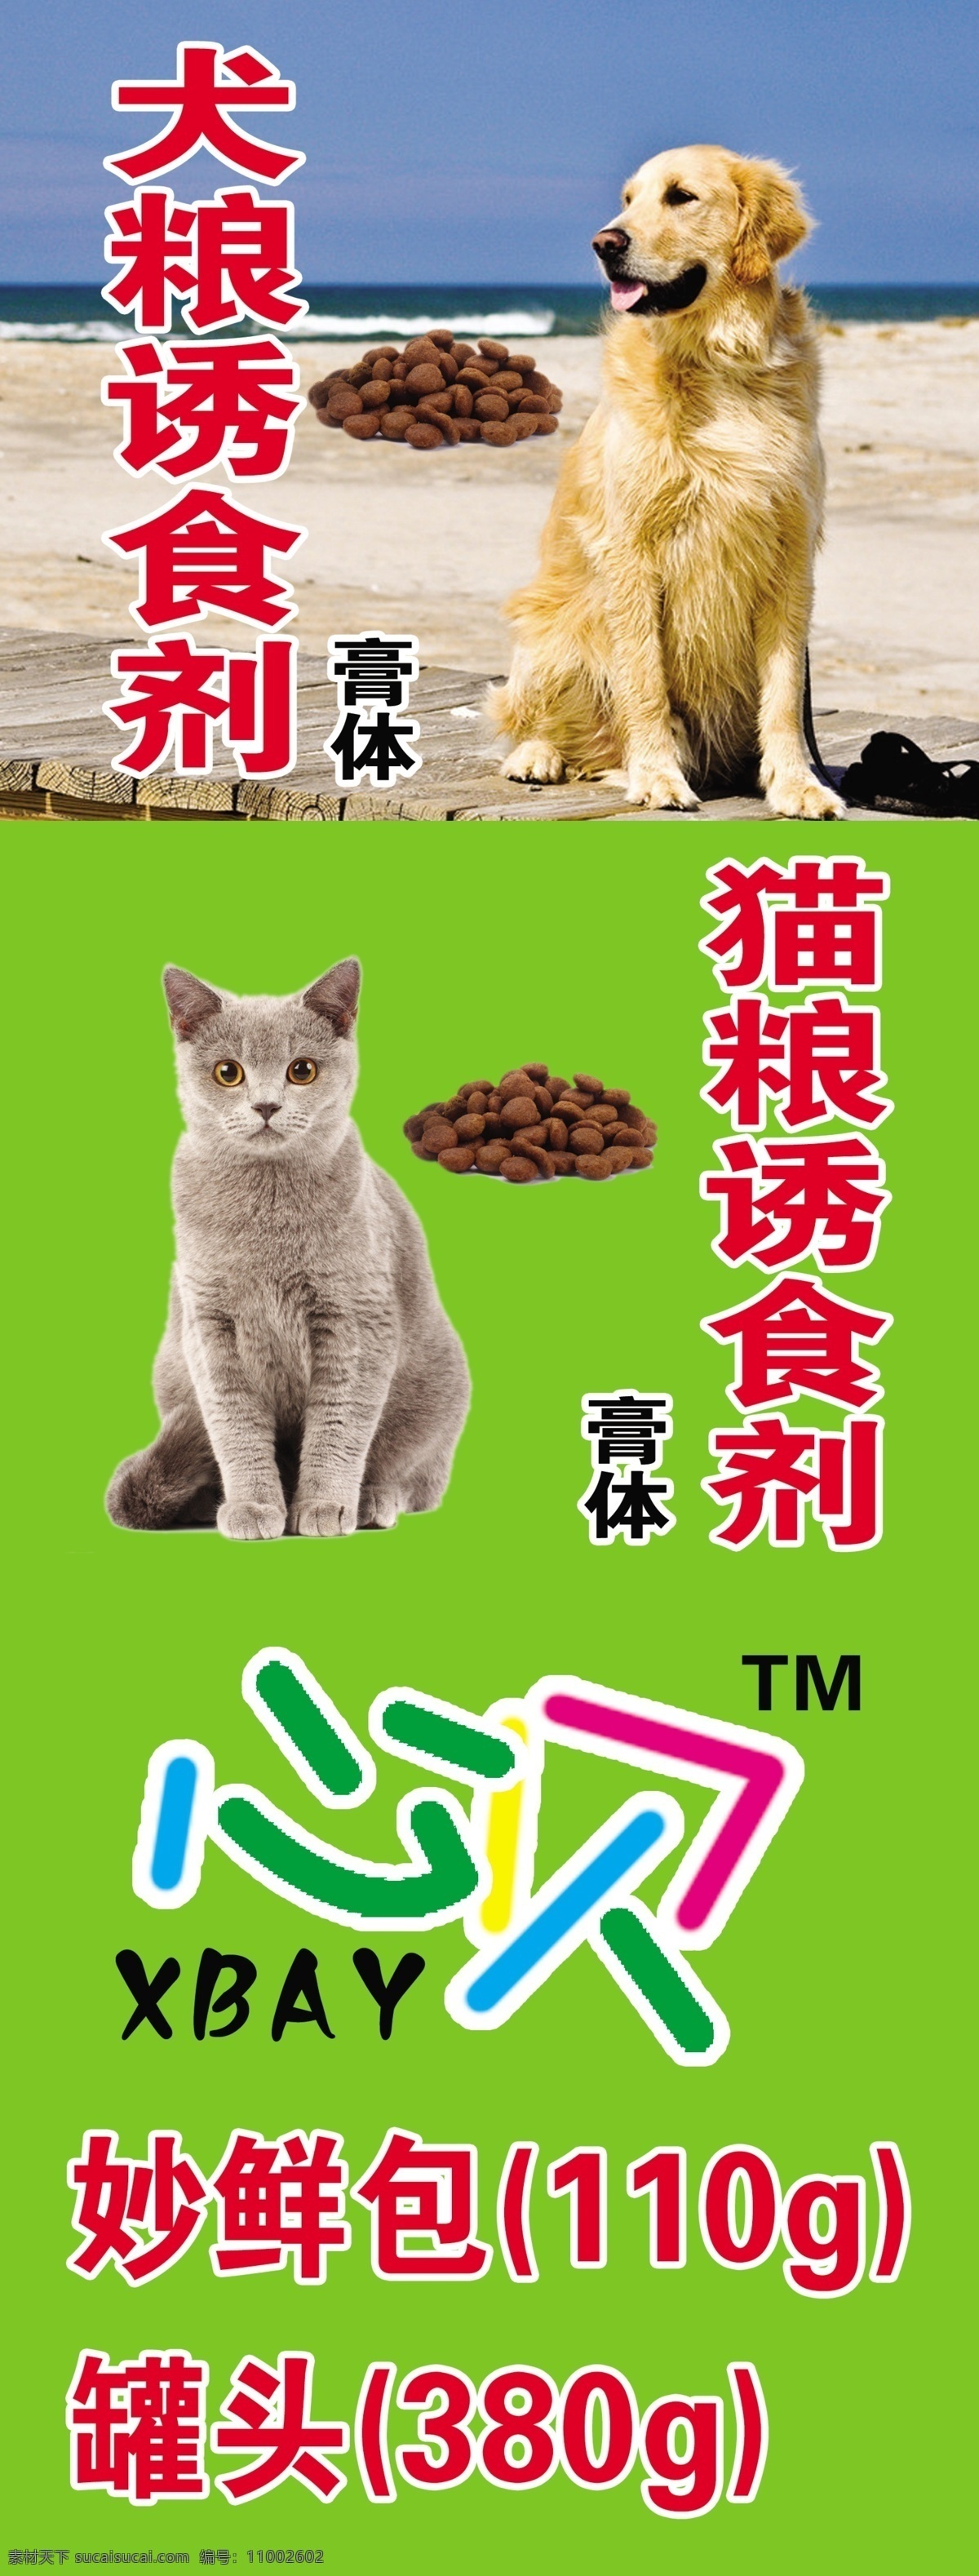 宠物食品 犬粮 猫粮 宠物 食品 宠物美食 分层